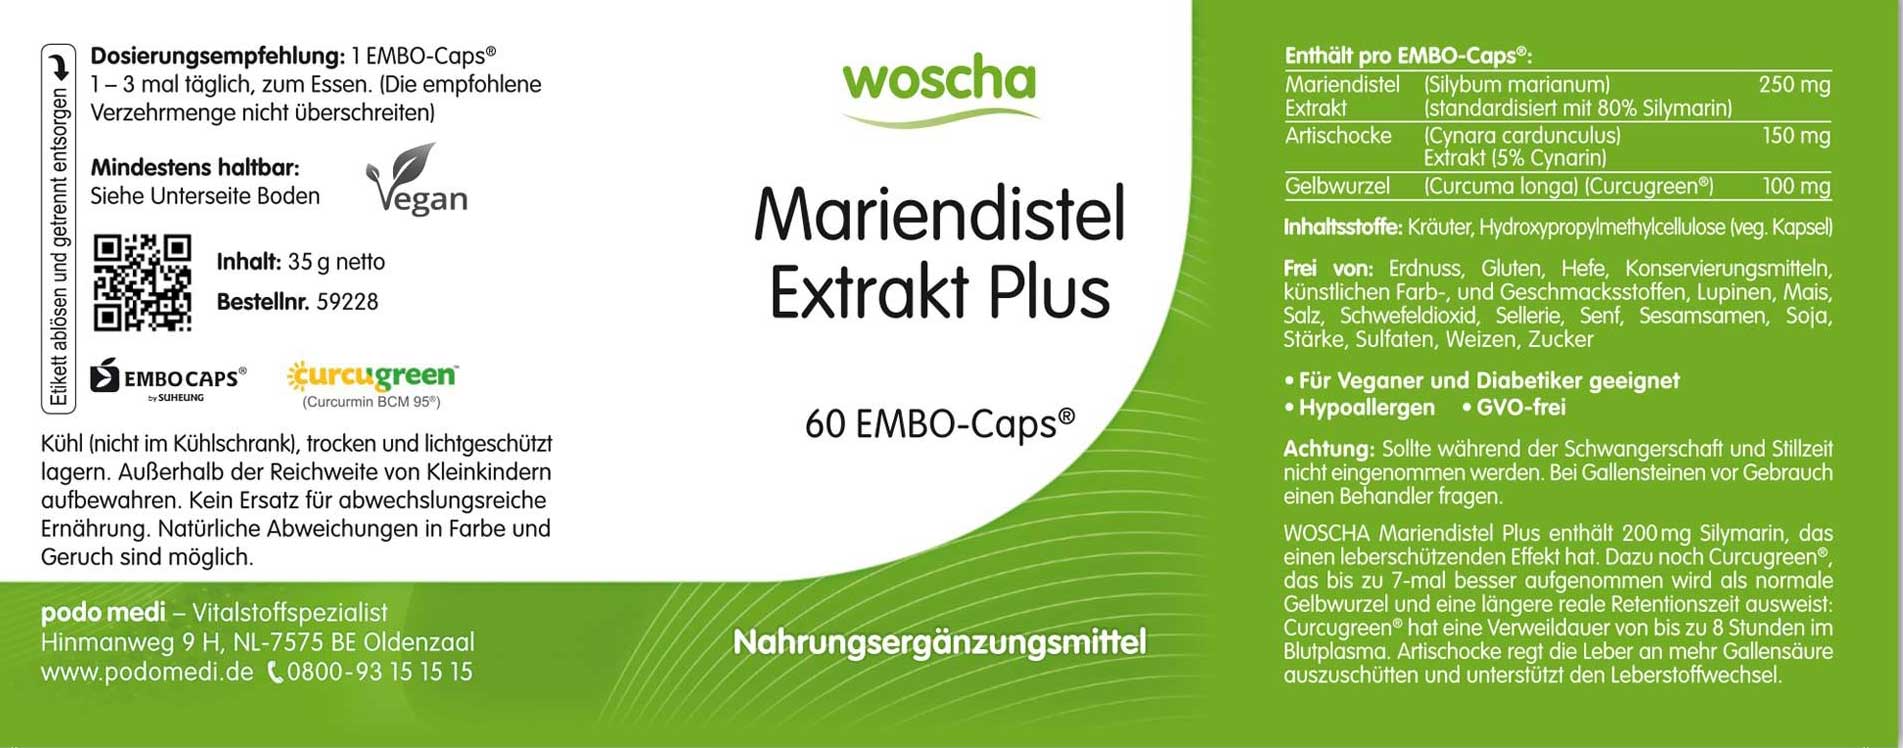 Woscha Mariendistel Extrakt Plus von podo medi beinhaltet 60 Caps Etikett